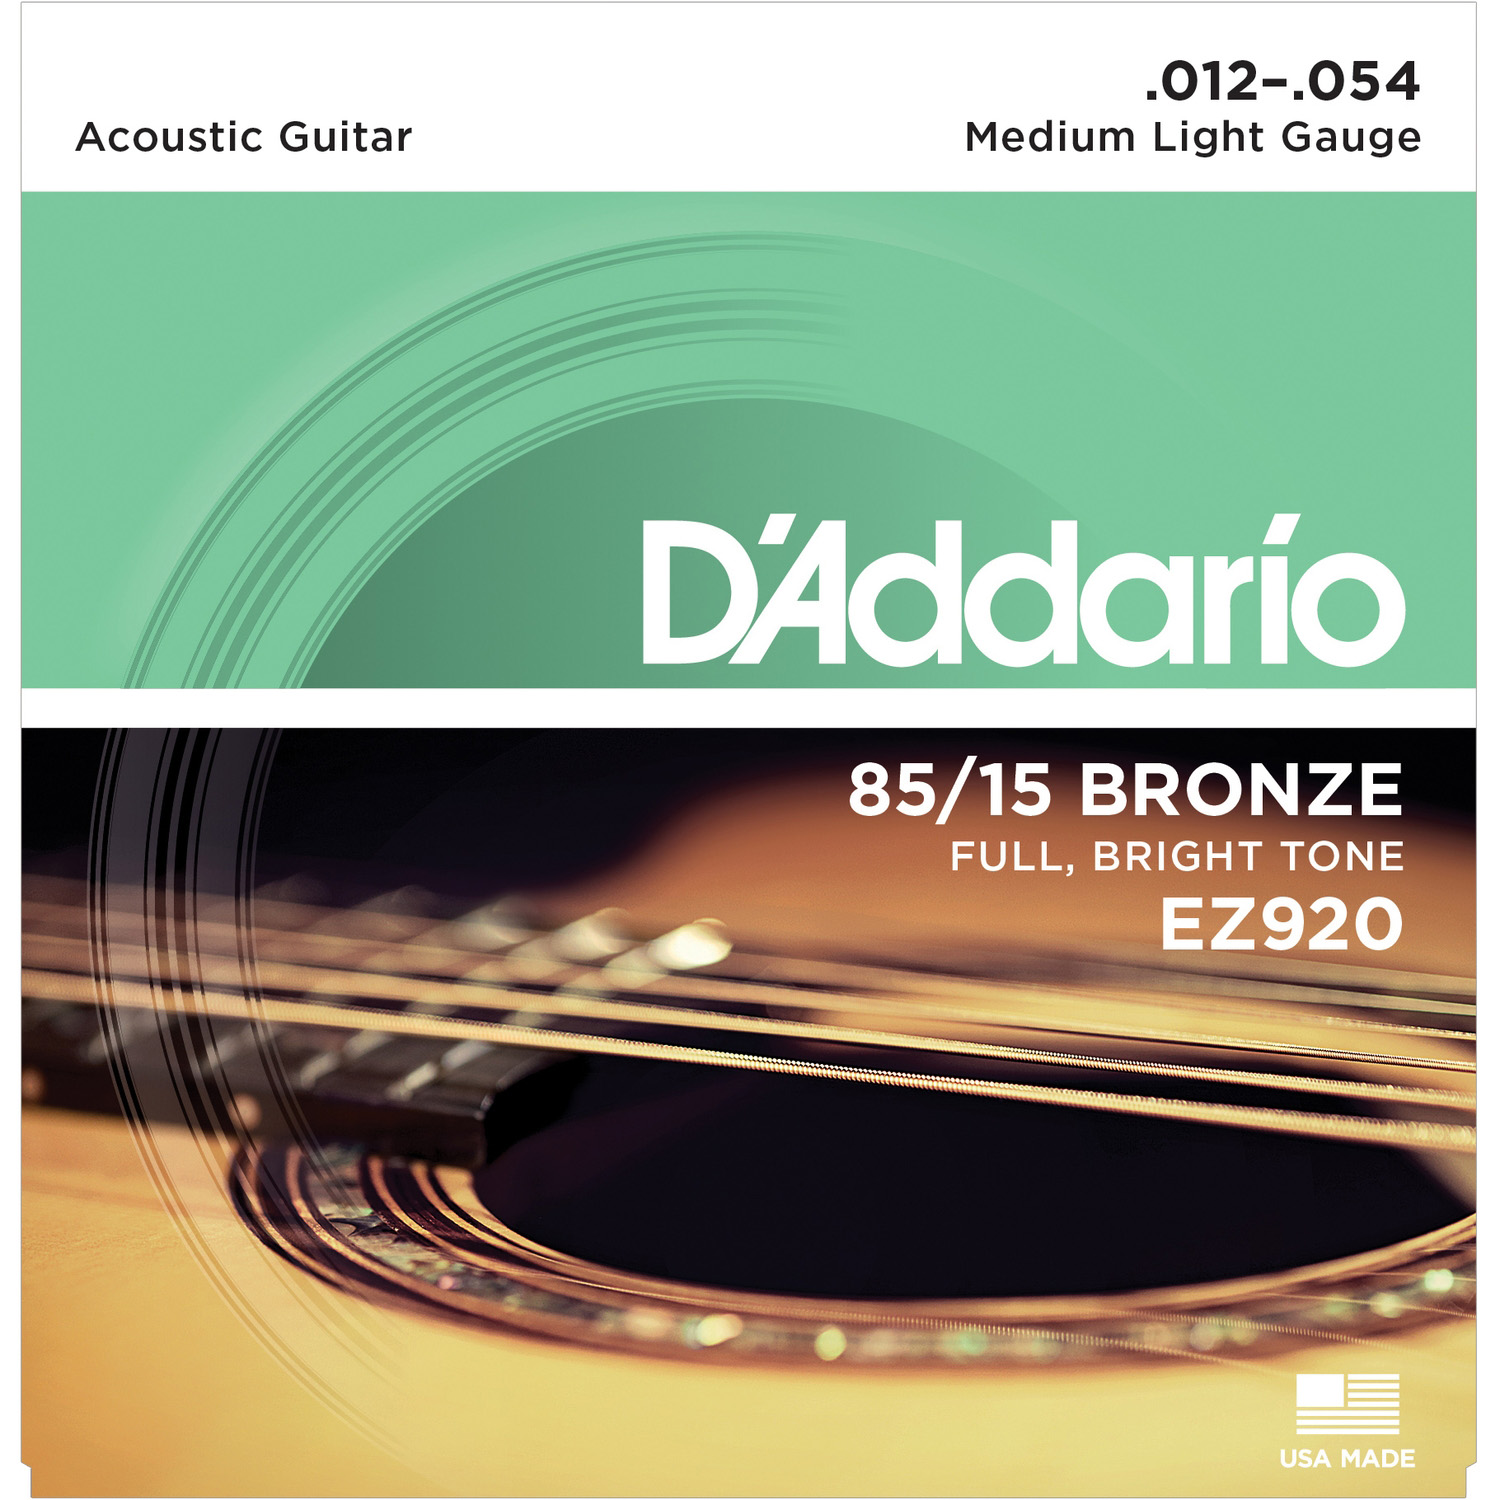 DAddario EZ920 Струны для акустических гитар